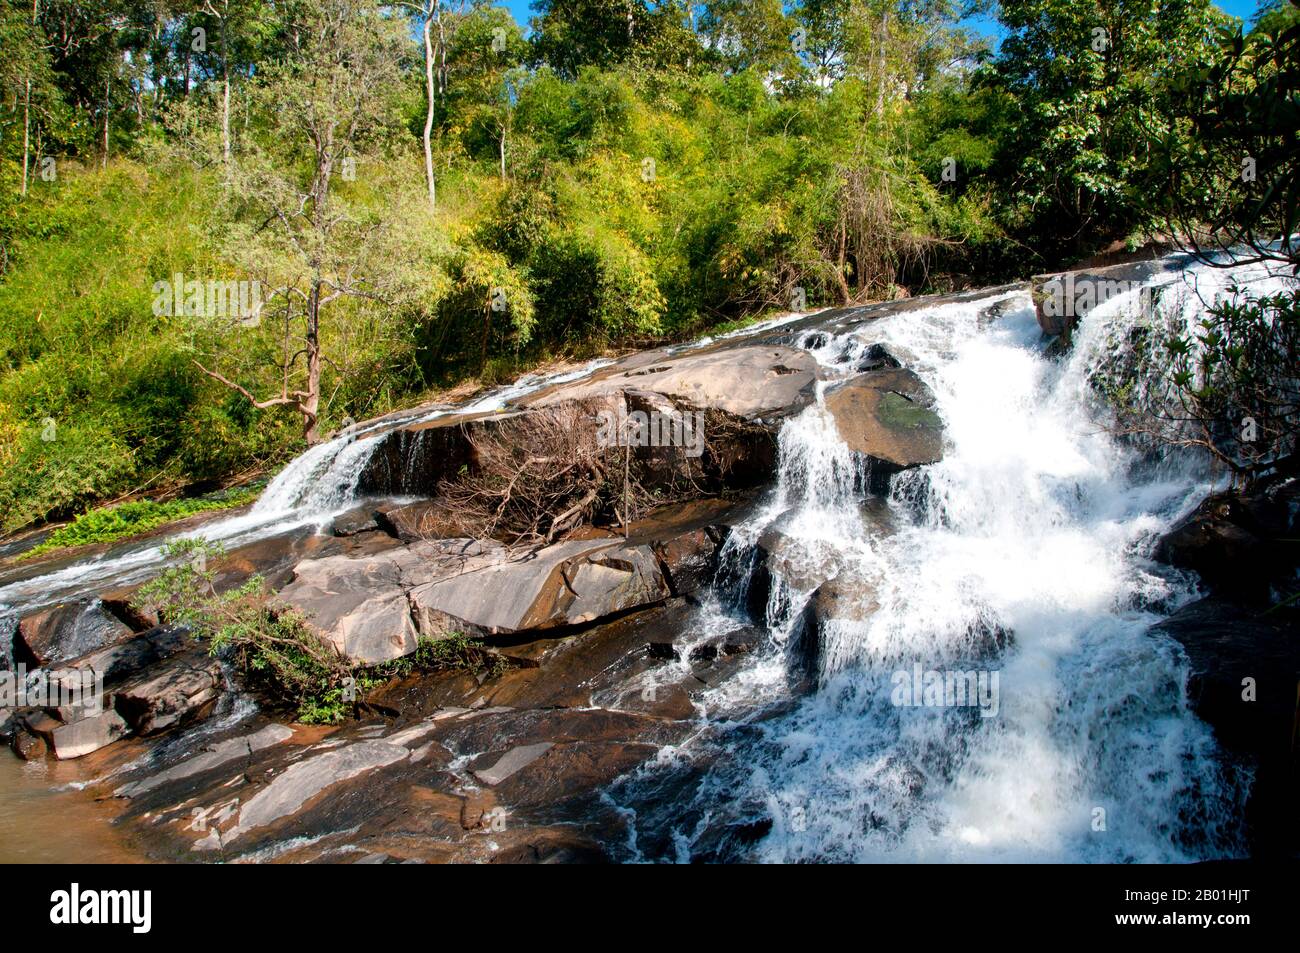 Thailand: Song Khon Waterfall bei Phu Ruea, Provinz Loei. Die Provinz Loei befindet sich im oberen Nordosten Thailands. Die benachbarten Provinzen sind (von Osten nach rechts) Nong Khai, Udon Thani, Nongbua Lamphu, Khon Kaen, Phetchabun, Phitsanulok. Im Norden grenzt sie an die Provinzen Xaignabouli und Vientiane in Laos. Die Provinz ist von niedrigen Bergen bedeckt, während die Hauptstadt Loei in einem fruchtbaren Becken liegt. Der Fluss Loei, der durch die Provinz fließt, ist ein Nebenfluss des Mekong, der zusammen mit dem kleineren Fluss Hueang die nördliche Grenze der Provinz zu Laos bildet. Stockfoto